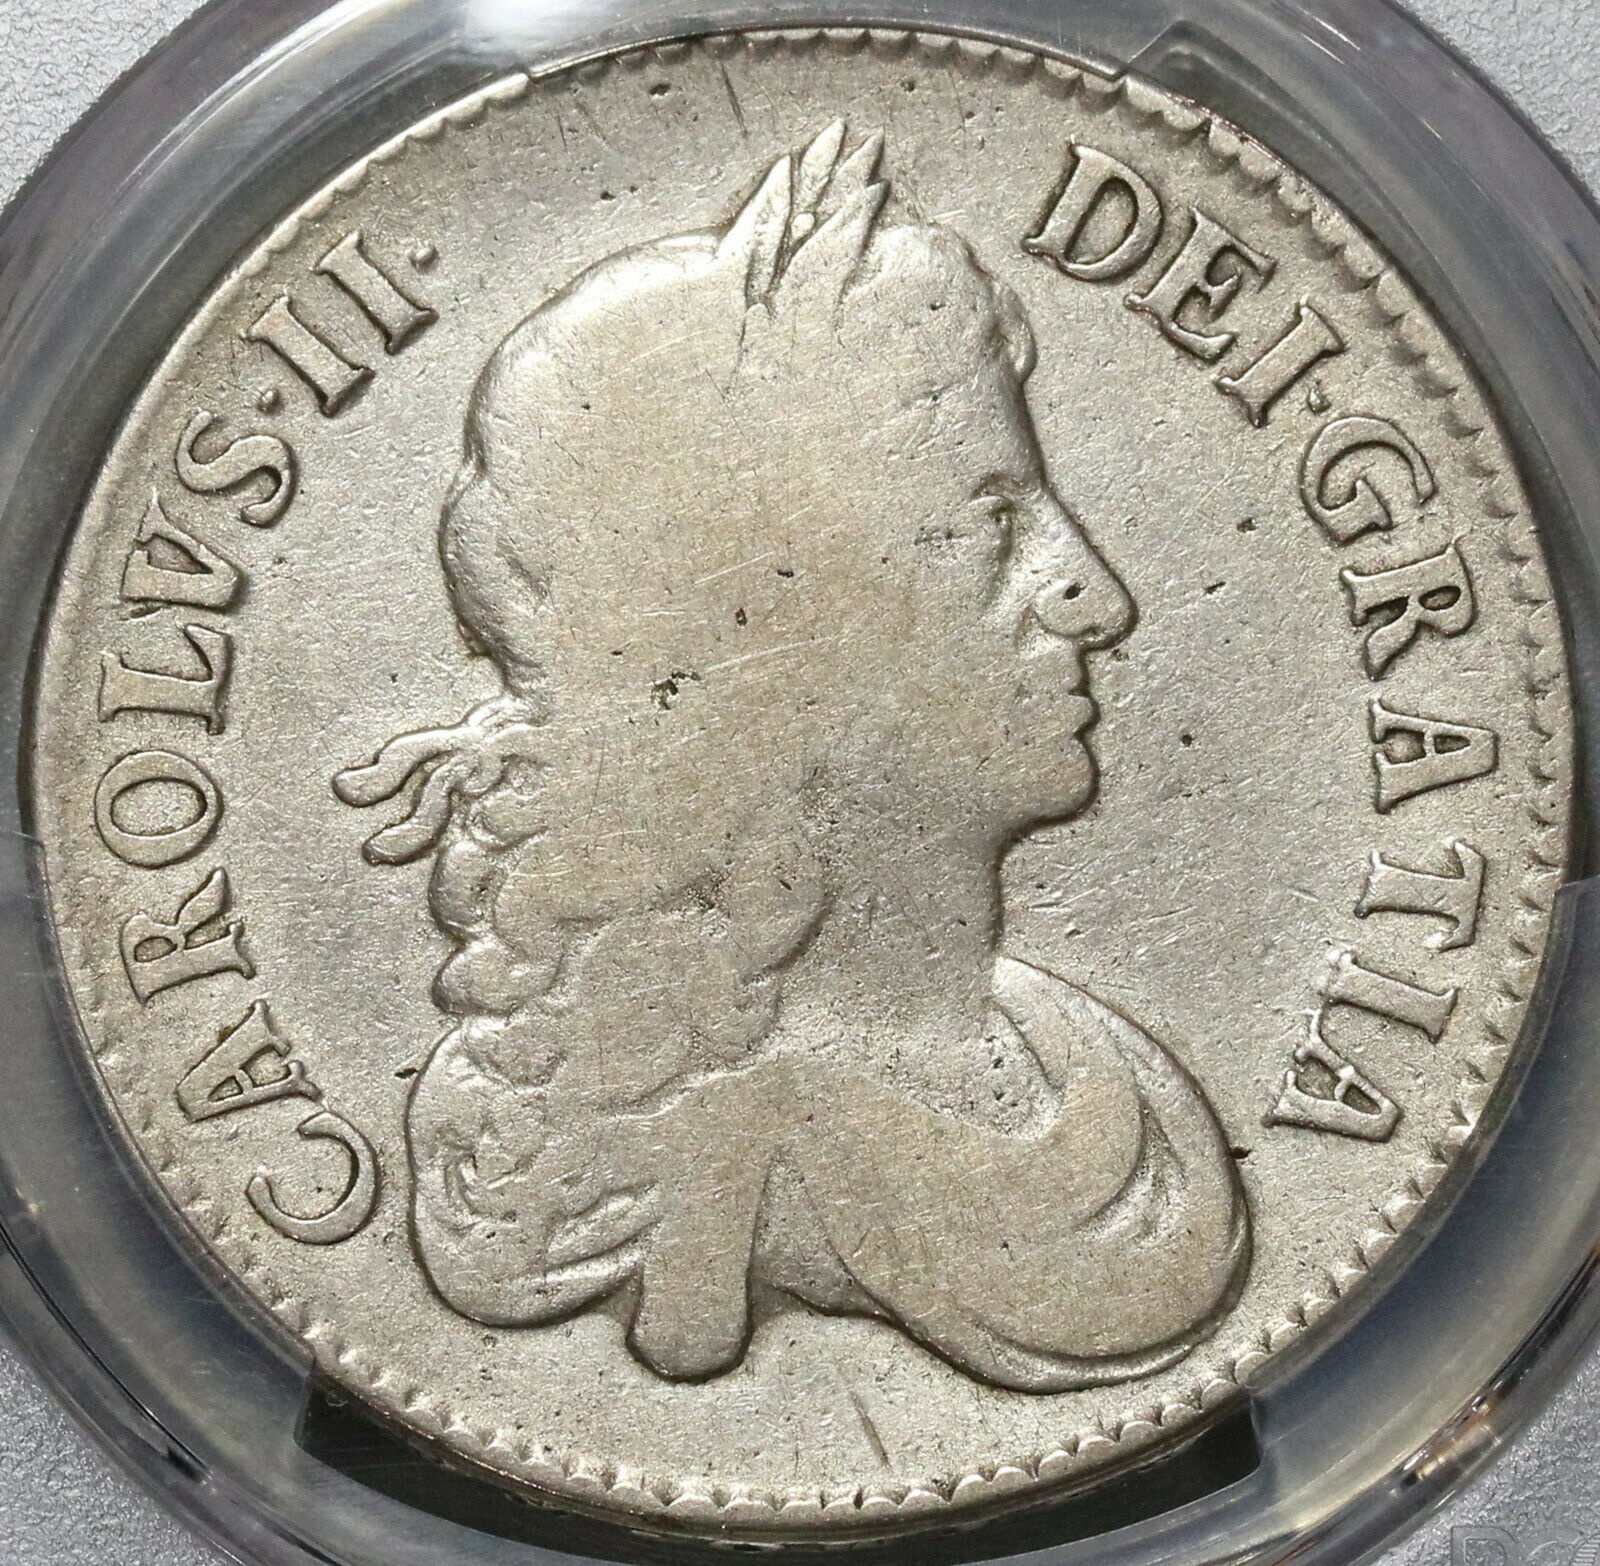  アンティークコイン コイン 金貨 銀貨  [送料無料] 1671 PCGS VG 10 Charles II Crown Rare Legend Error Great Britain Coin (20020801C